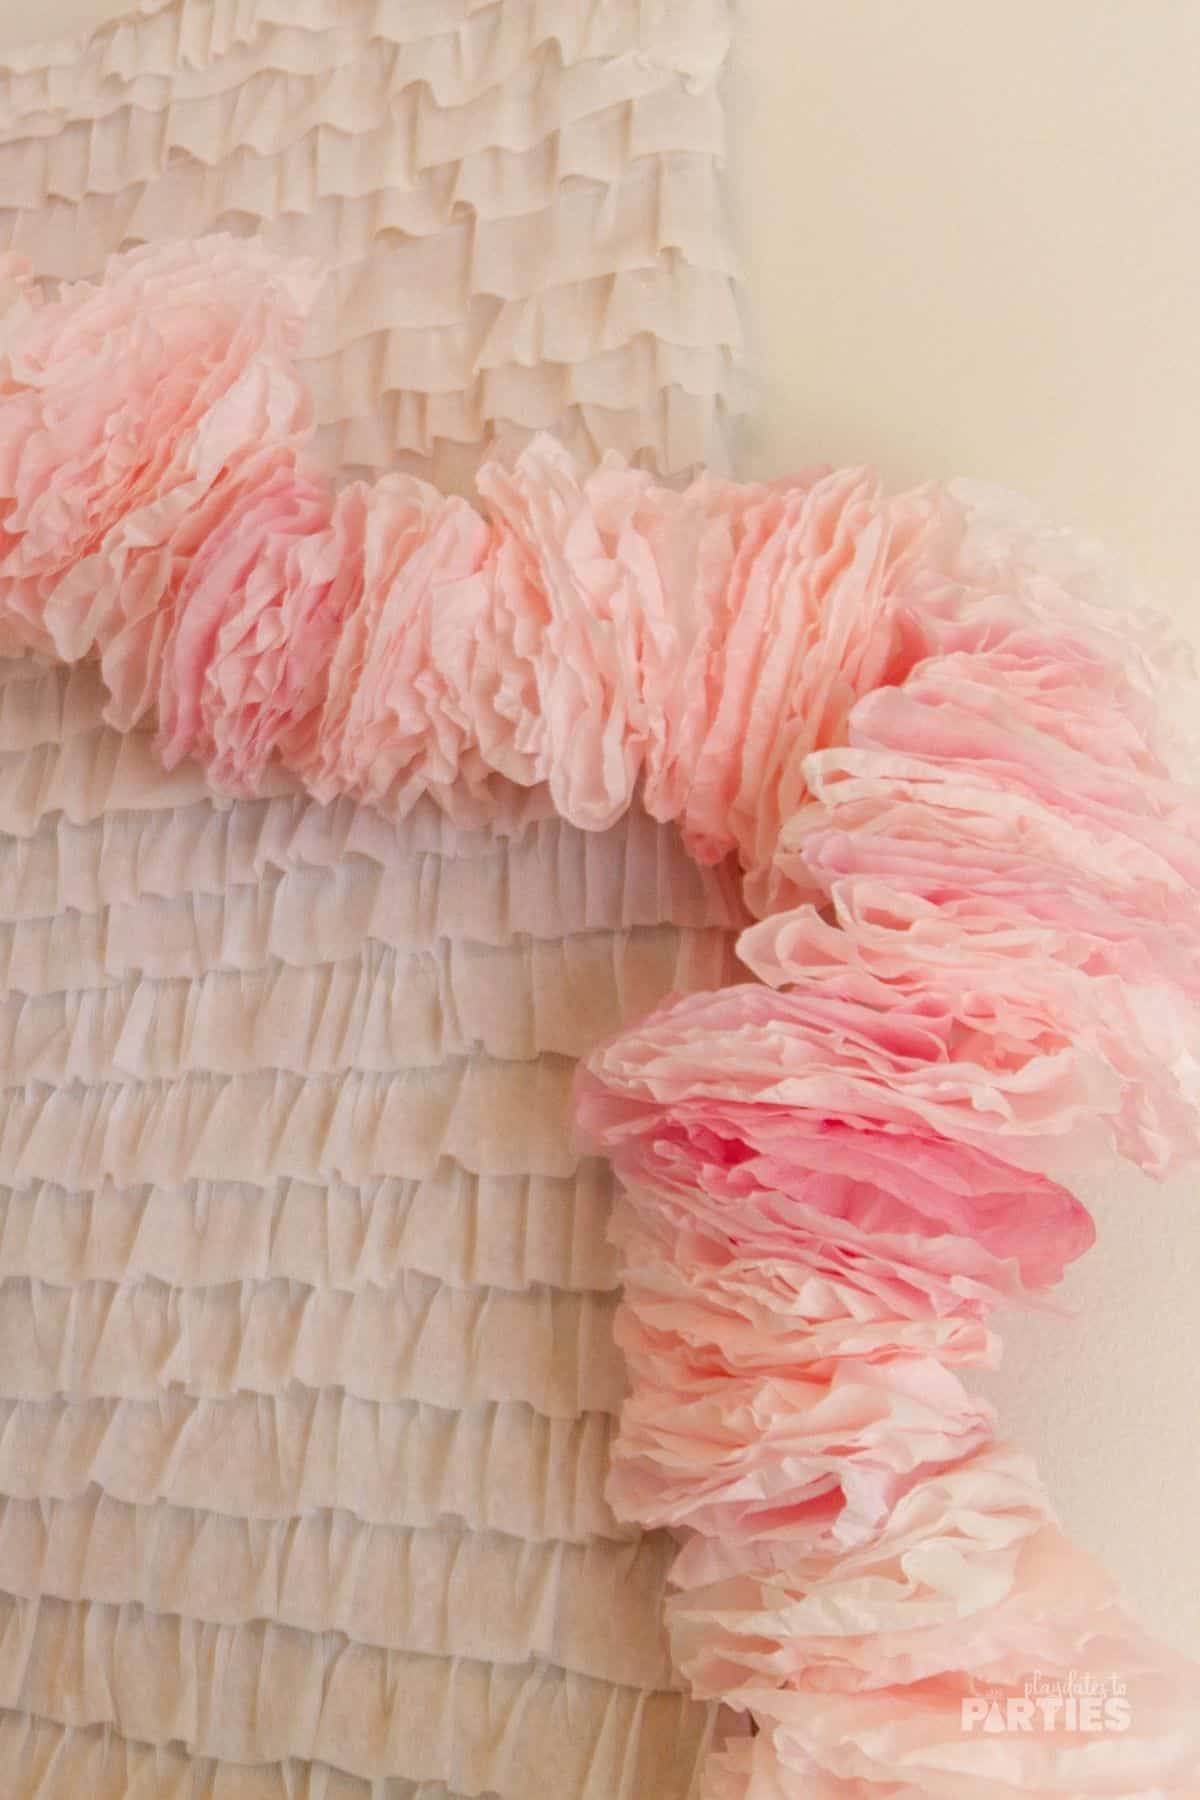 A fluffy pink garland draped along a white ruffle backdrop.